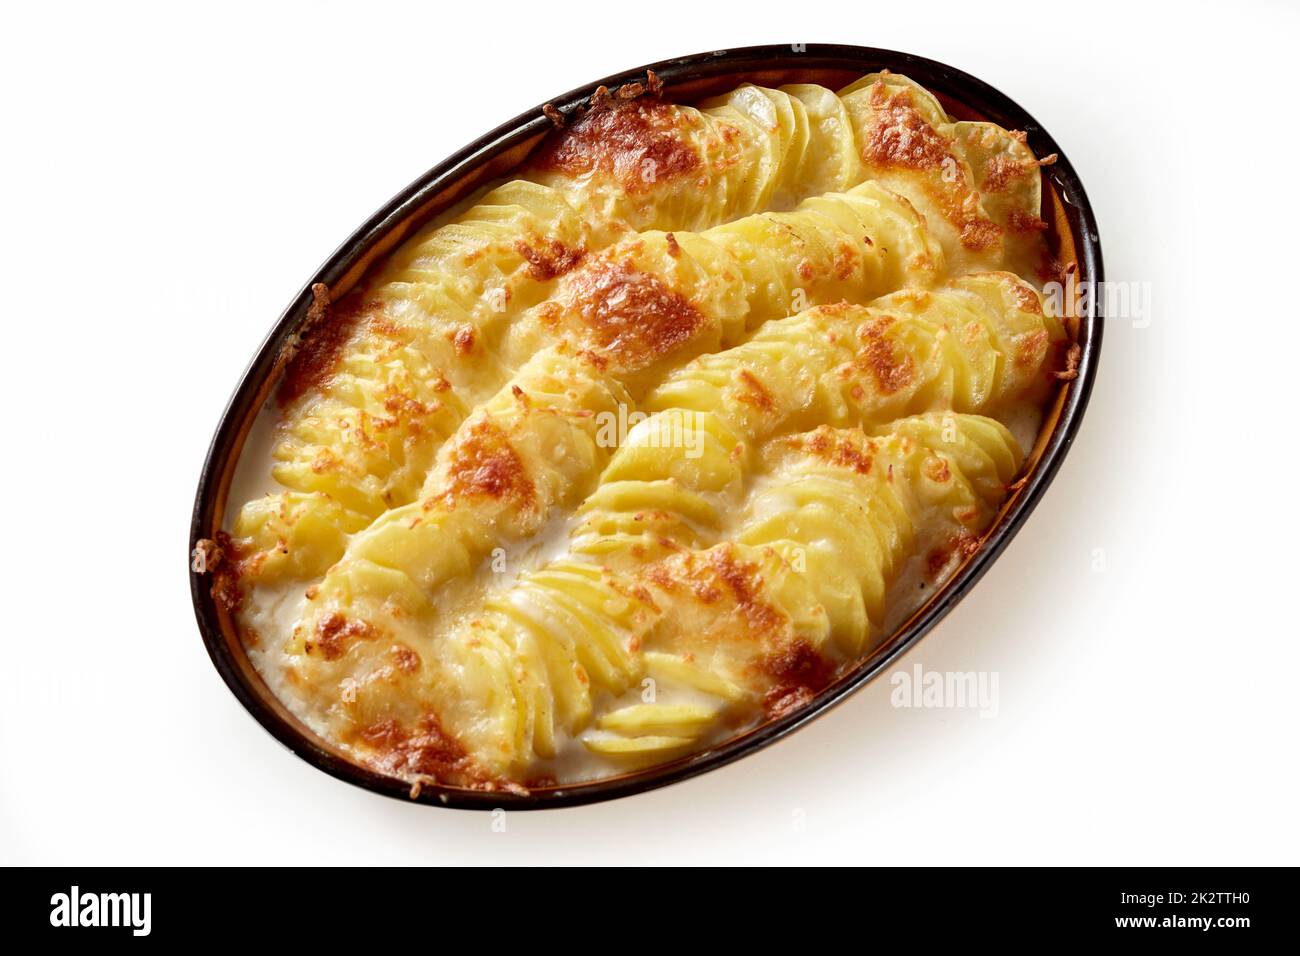 Delicious creamy potato gratin in casserole served on white table Stock Photo